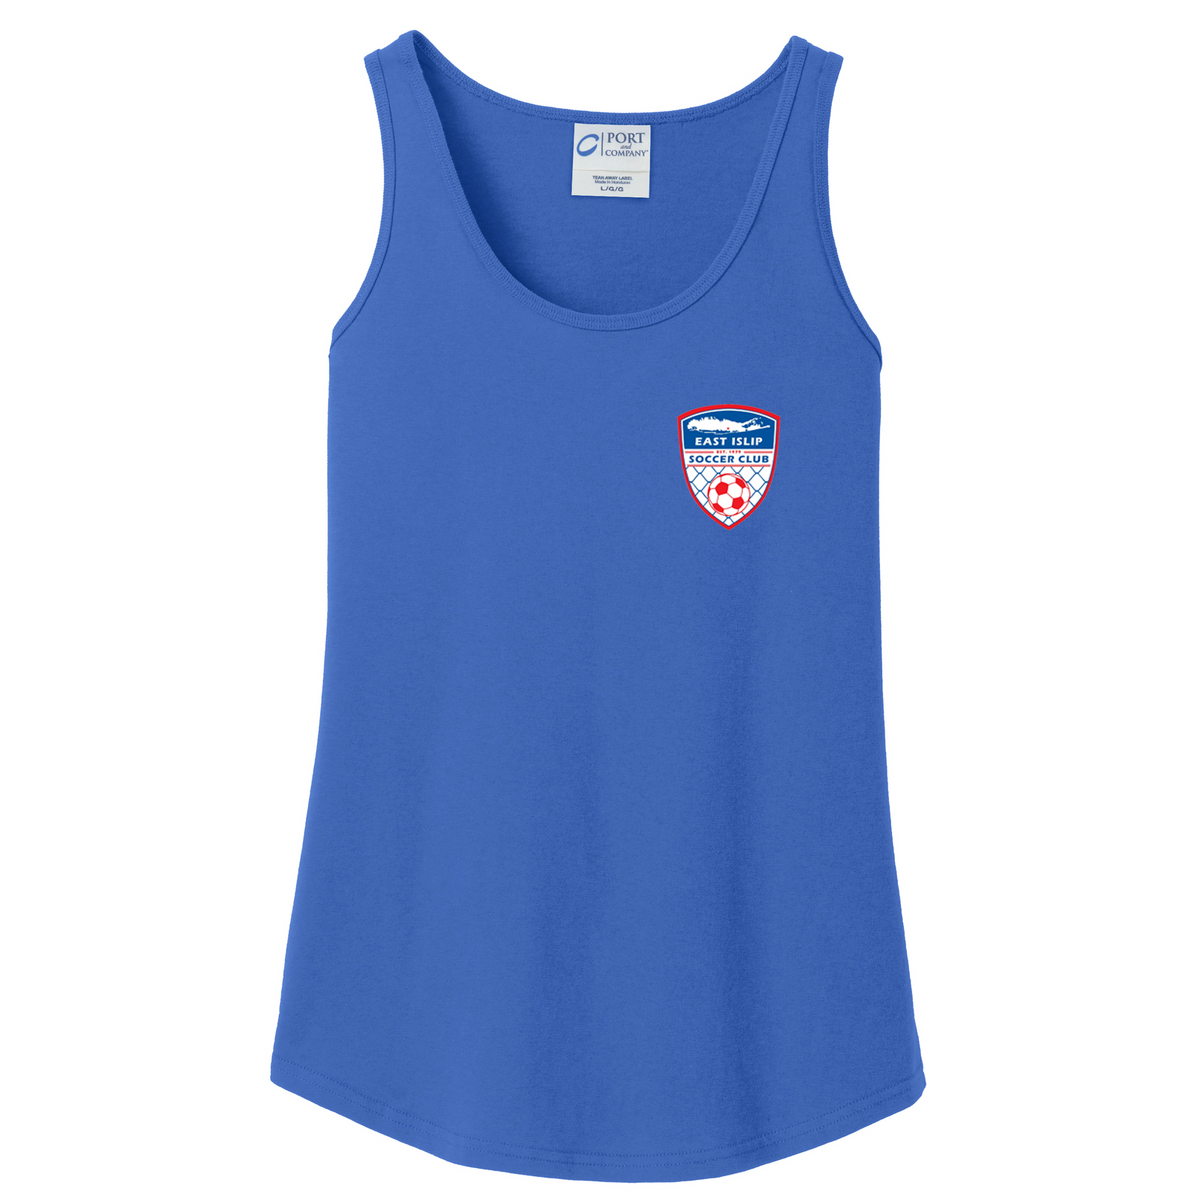 East Islip Soccer Club Women's Tank Top